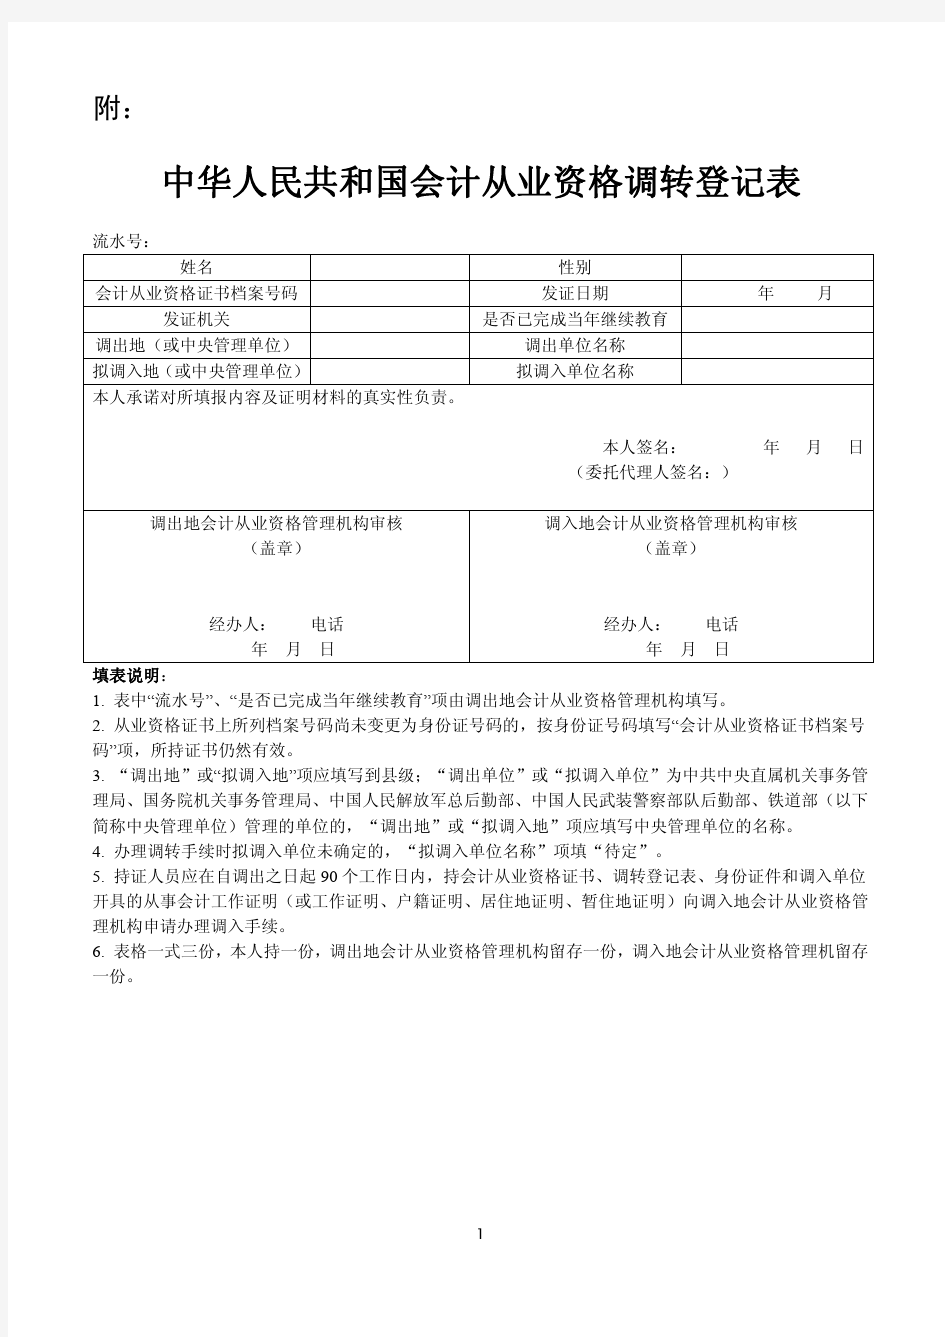 《中华人民共和国会计从业资格调转登记表》